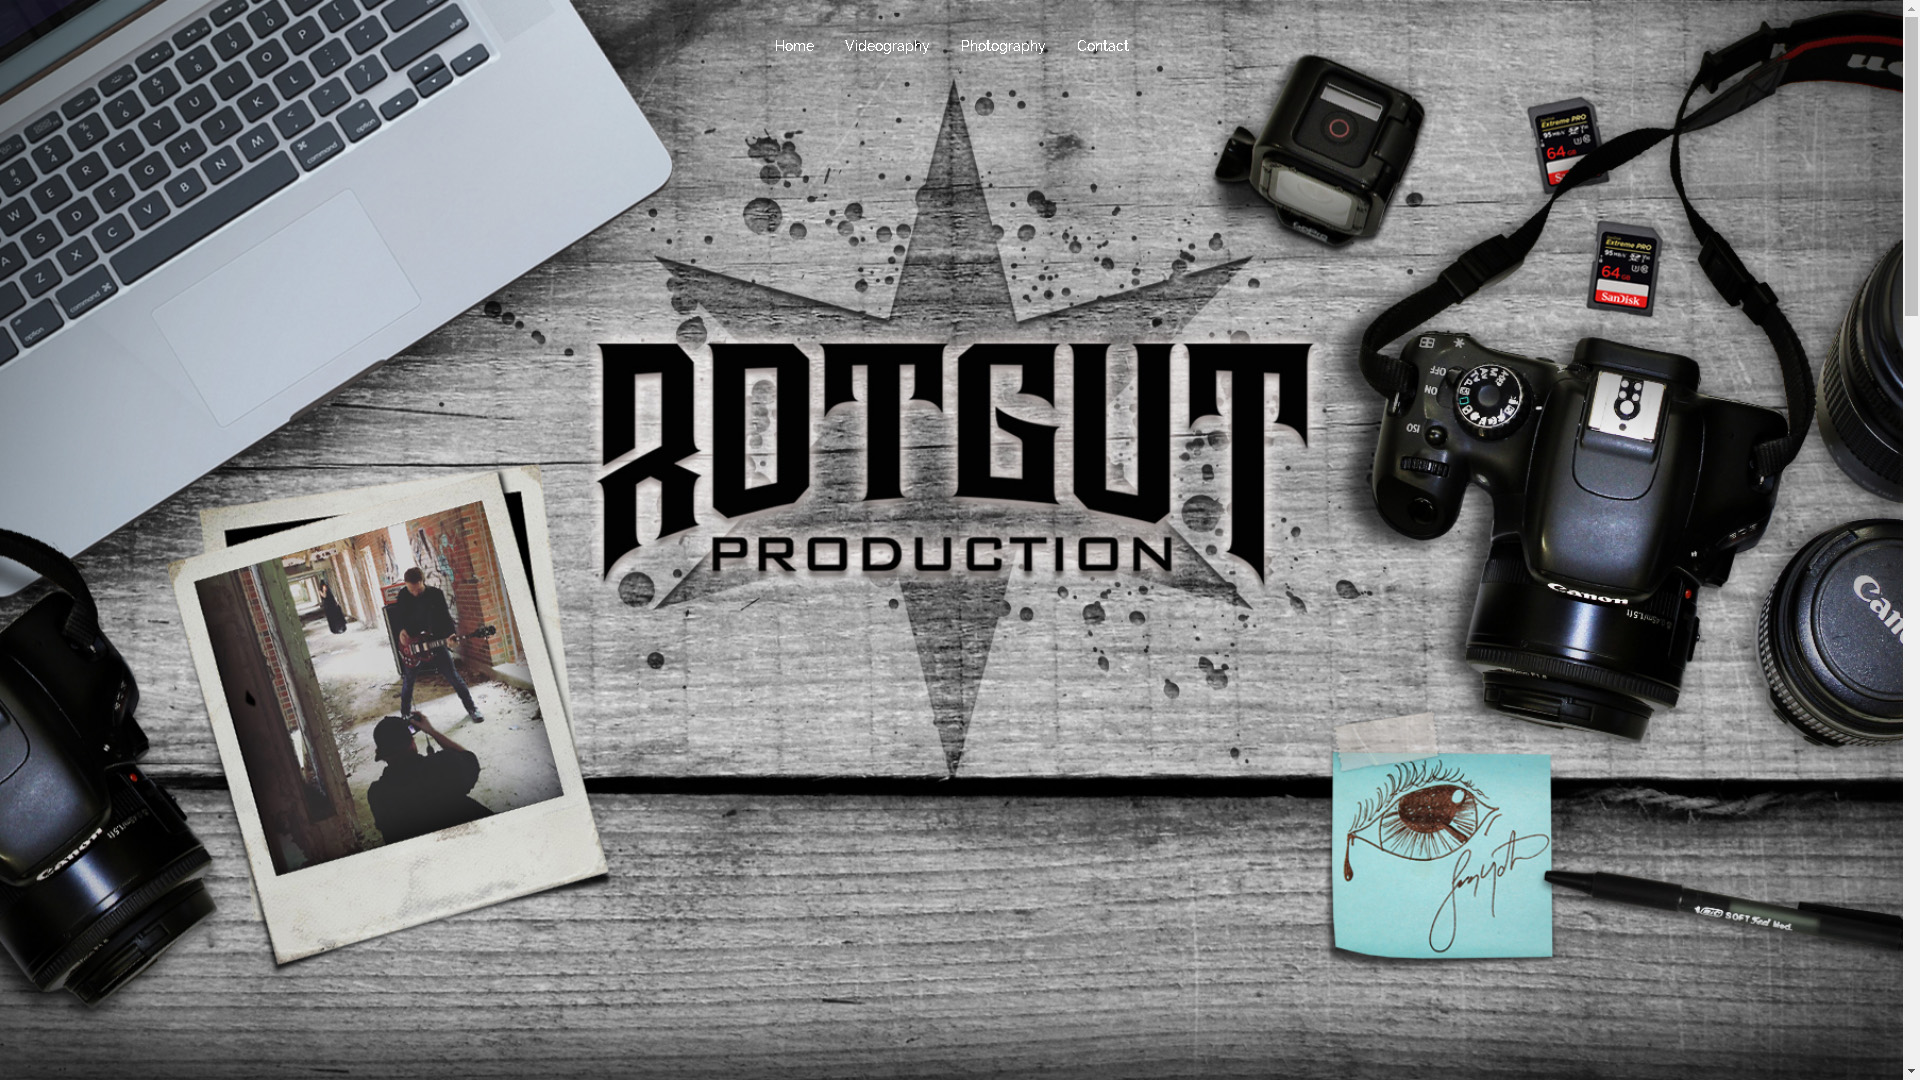 RotgutProduction.com